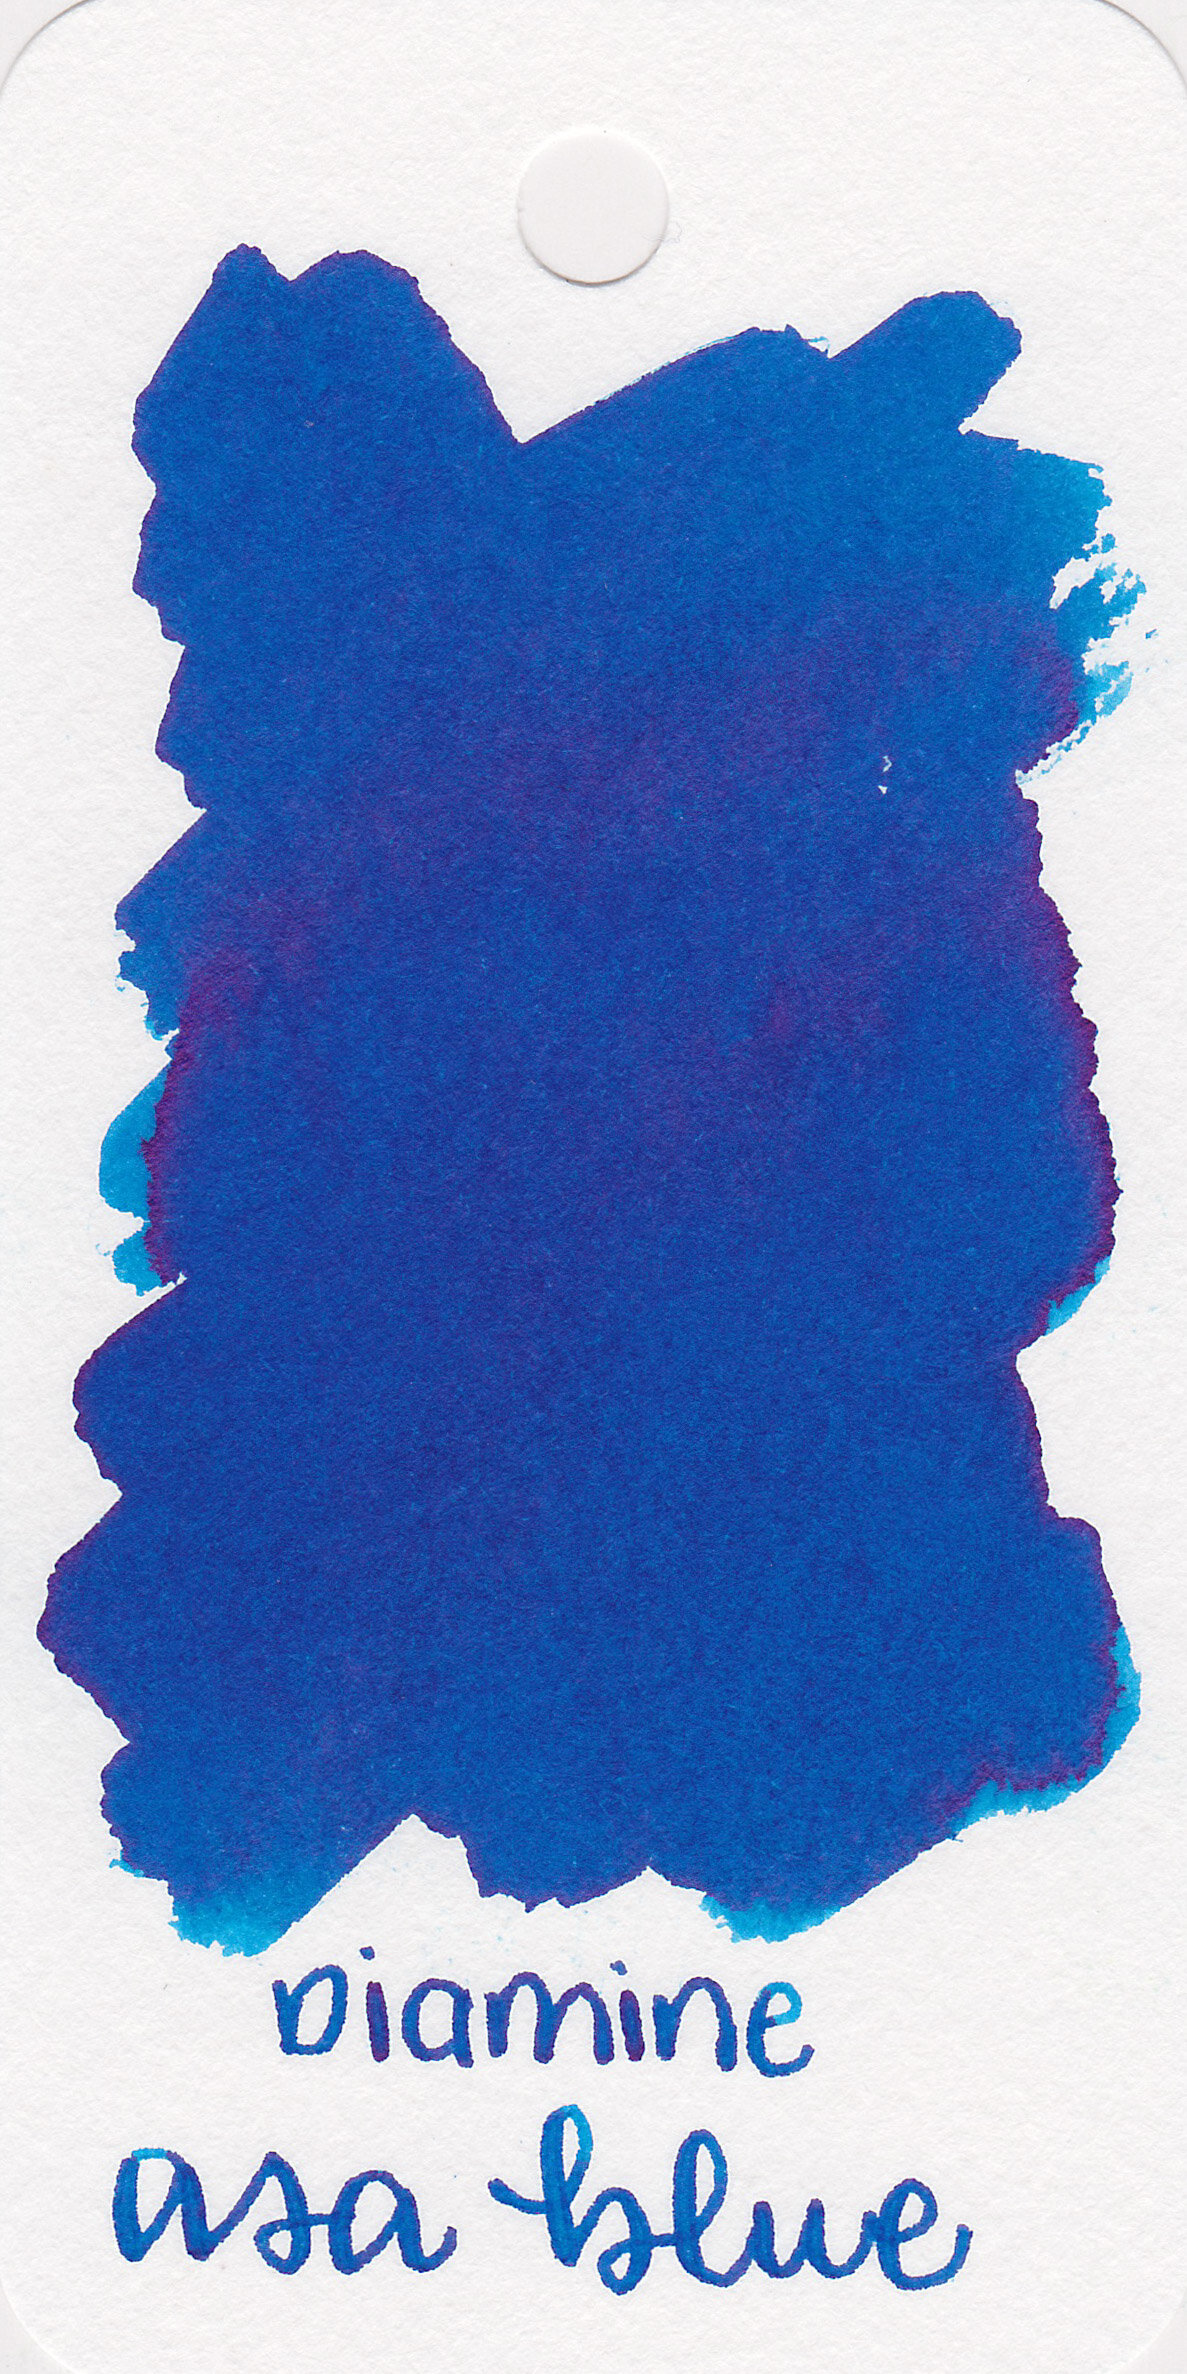 d-asa-blue-1.jpg